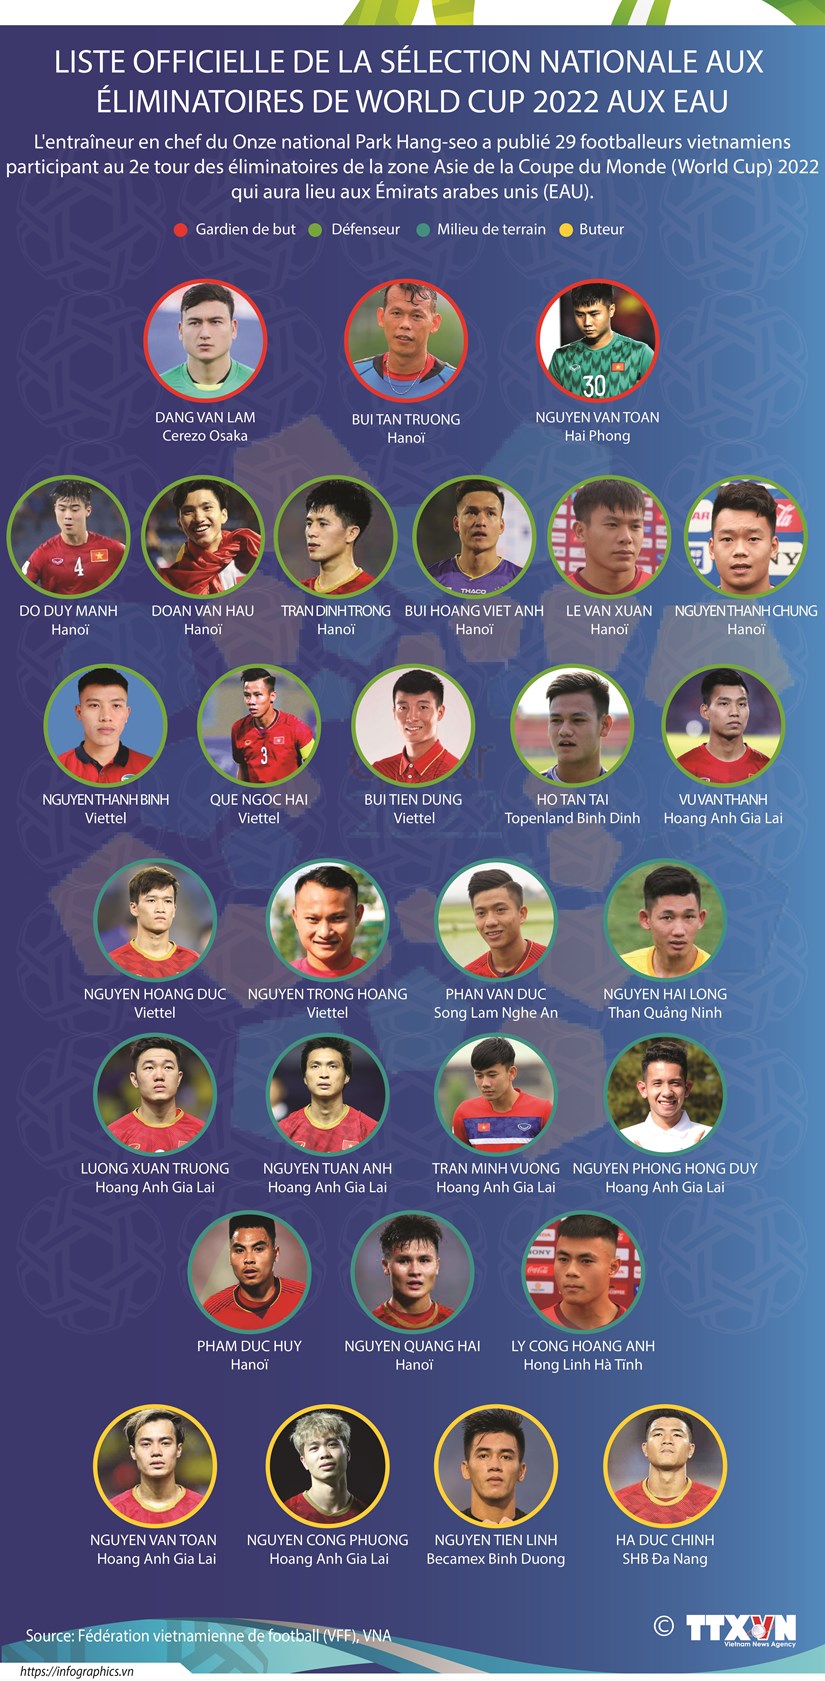 Liste officielle de la selection nationale aux eliminatoires de World Cup 2022 hinh anh 1